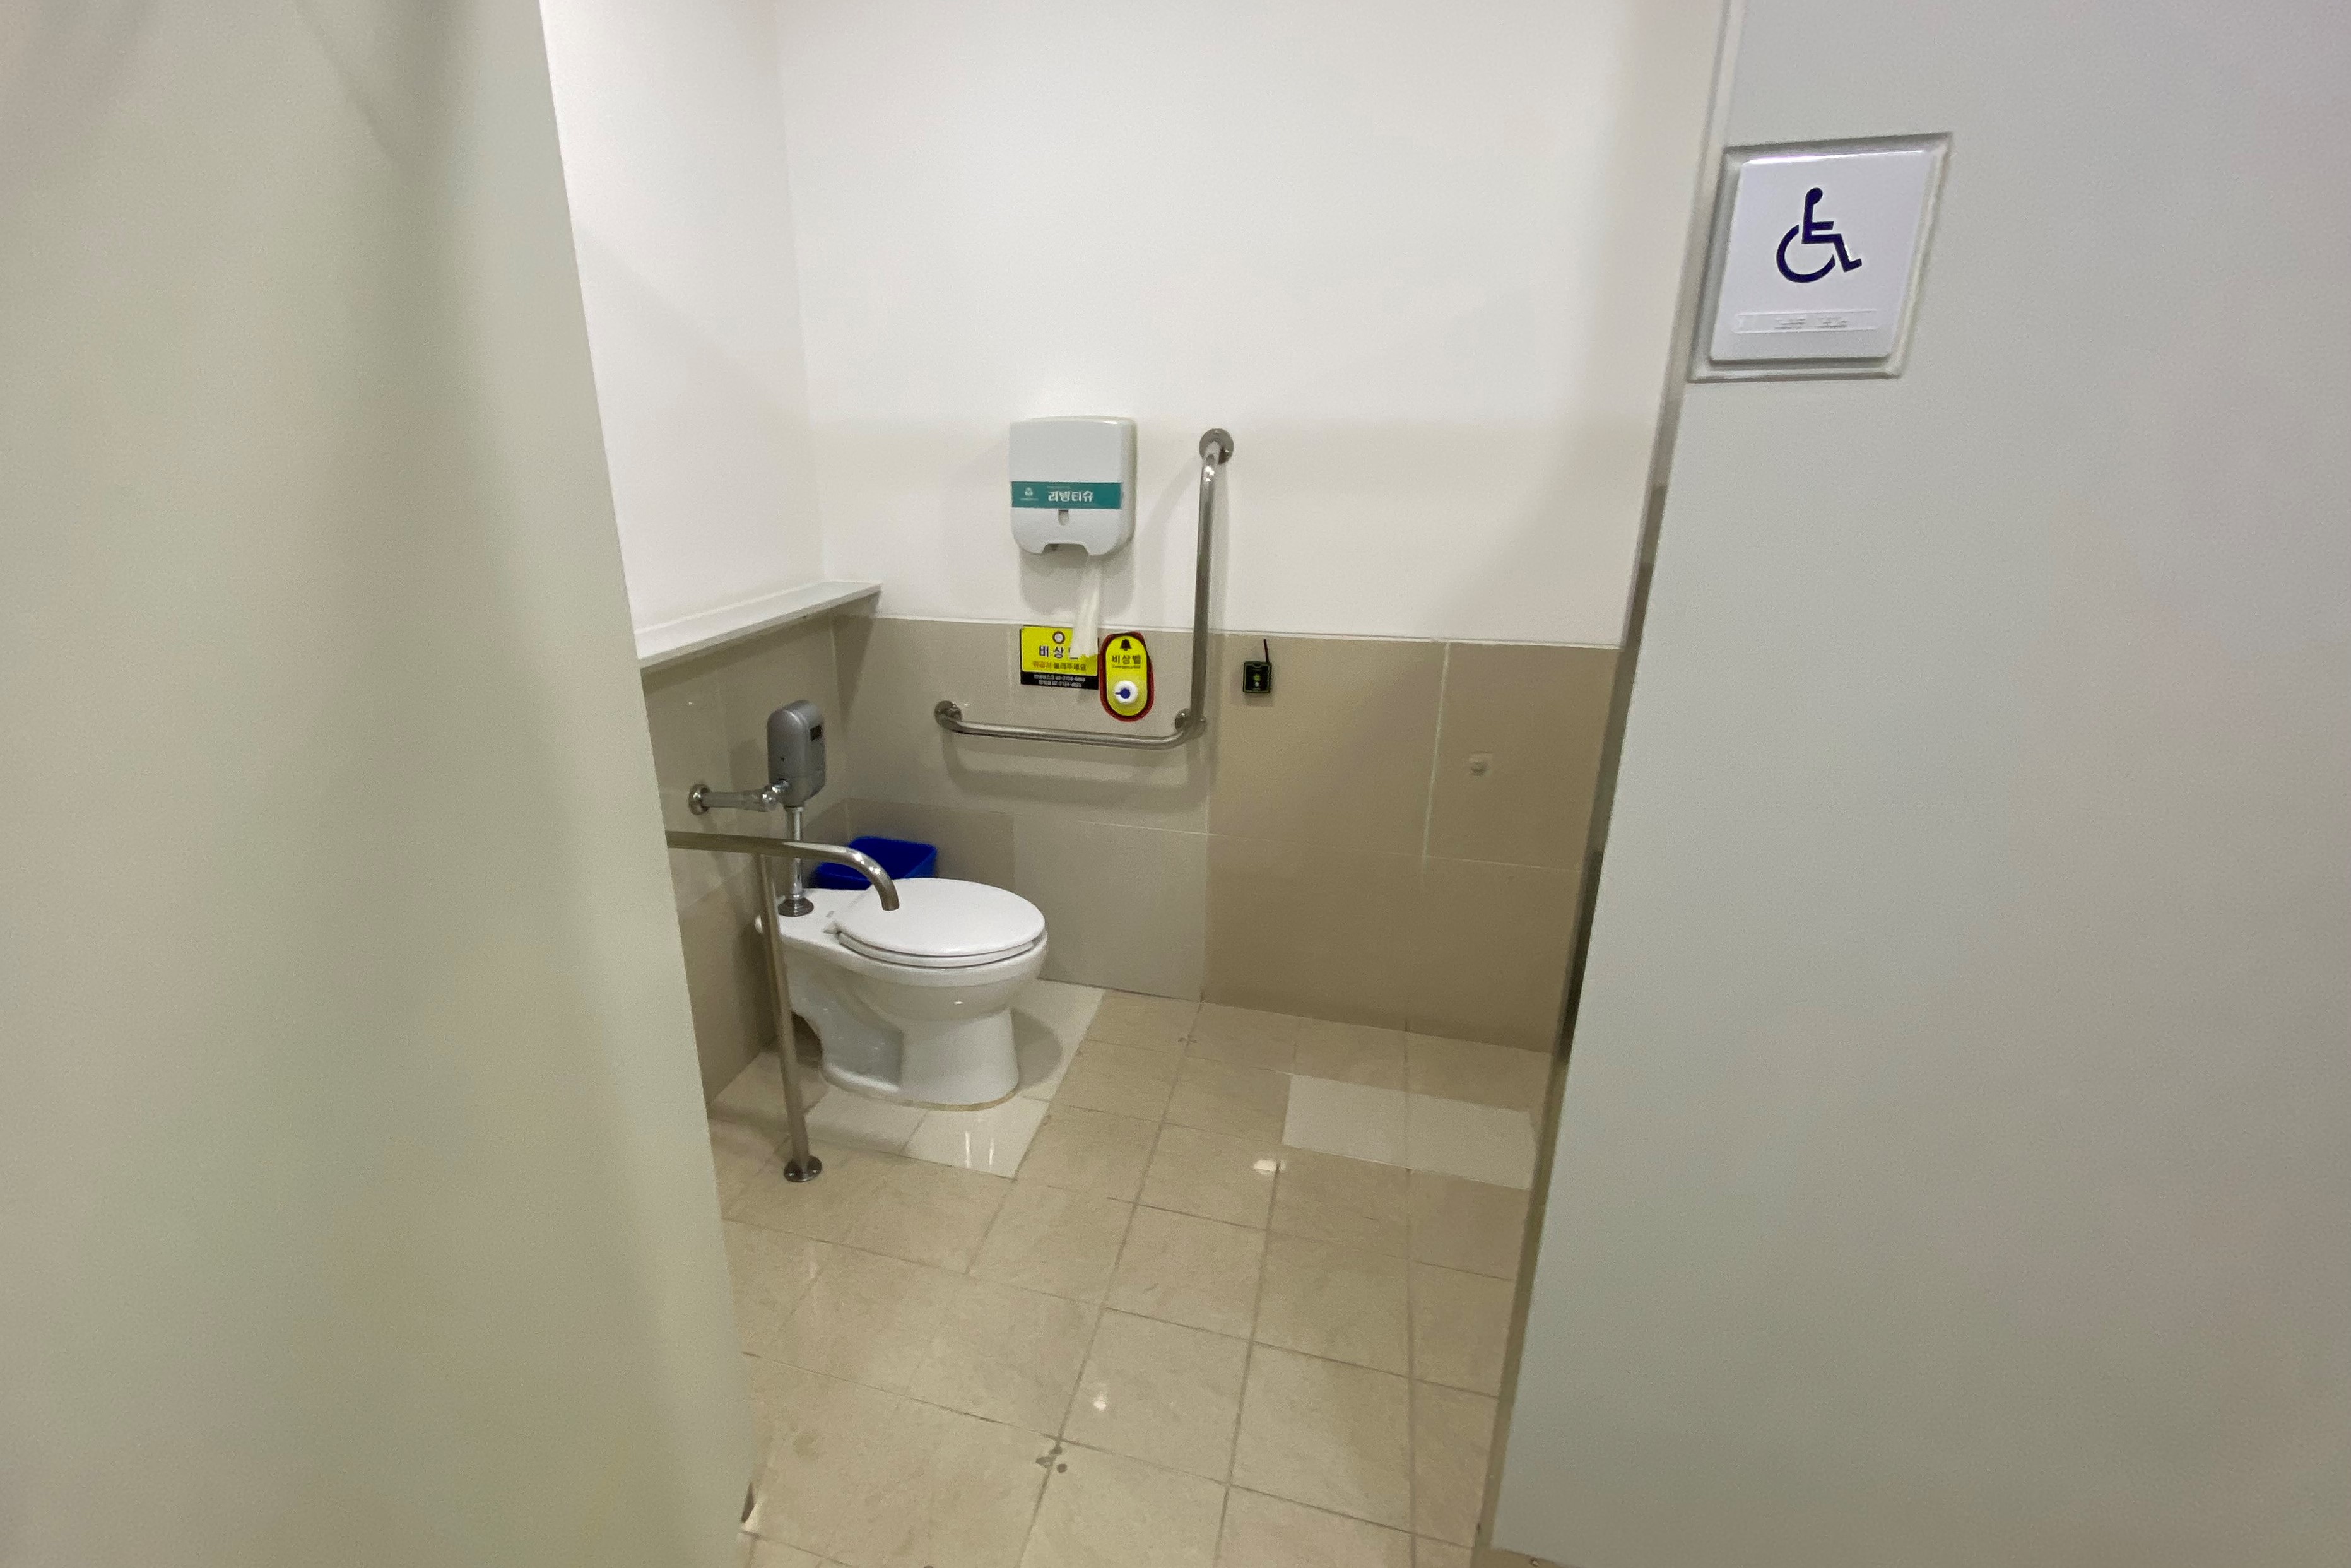 장애인화장실0 : 서울시립미술관서소문관 장애인화장실 내부 전경